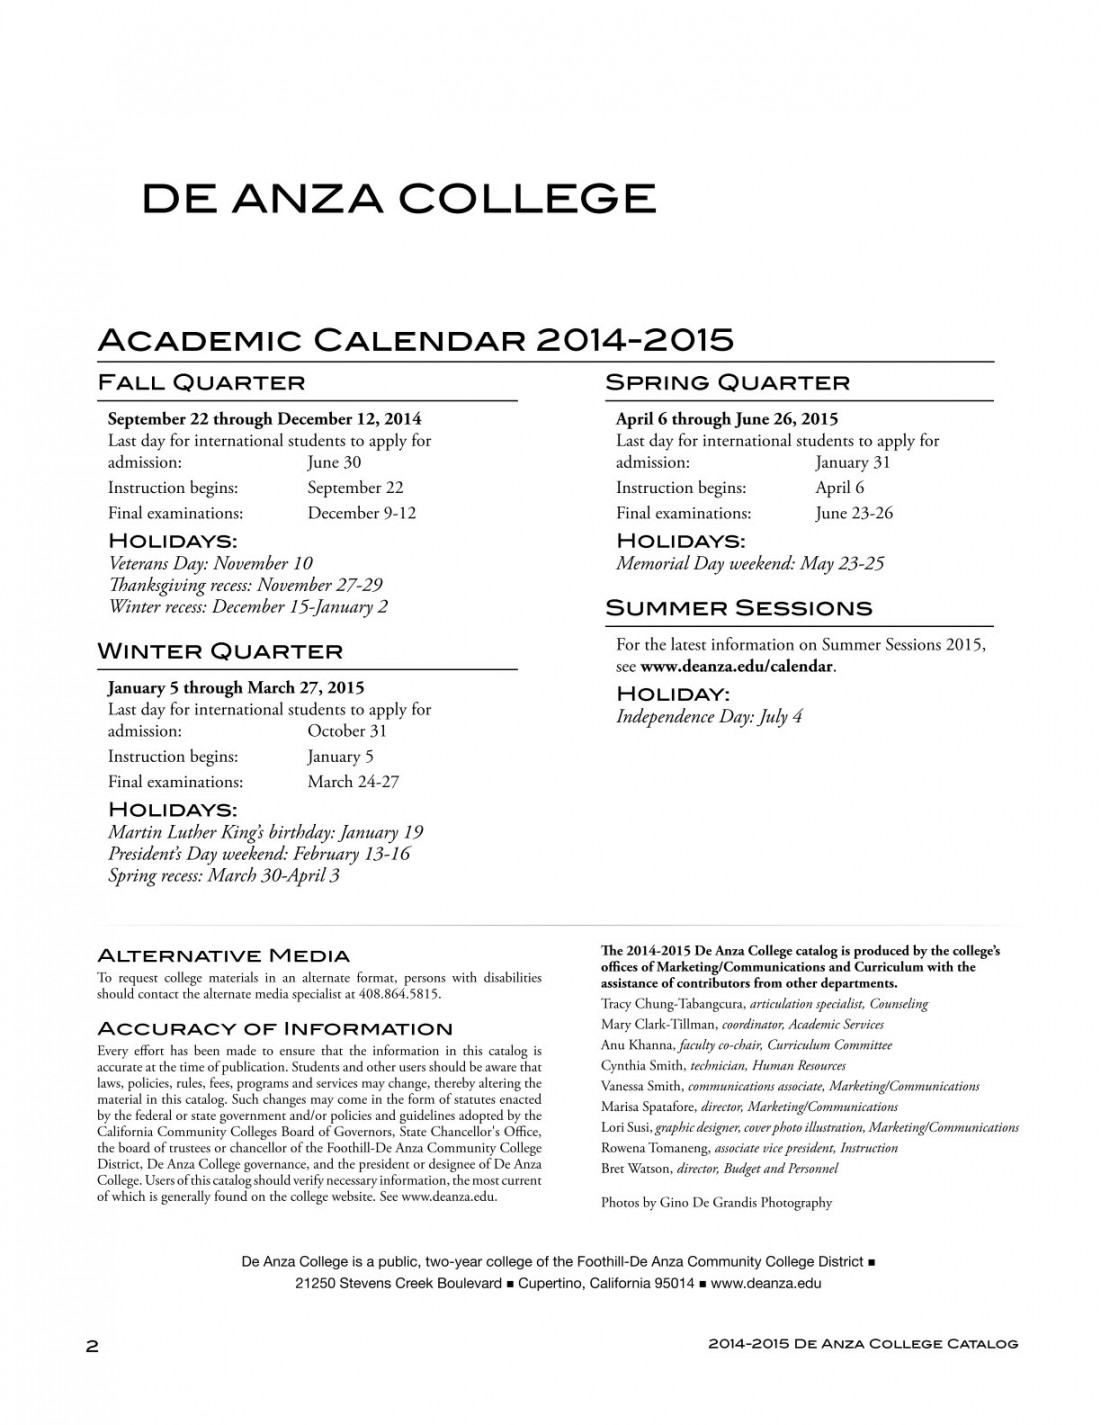 De Anza College Catalog -